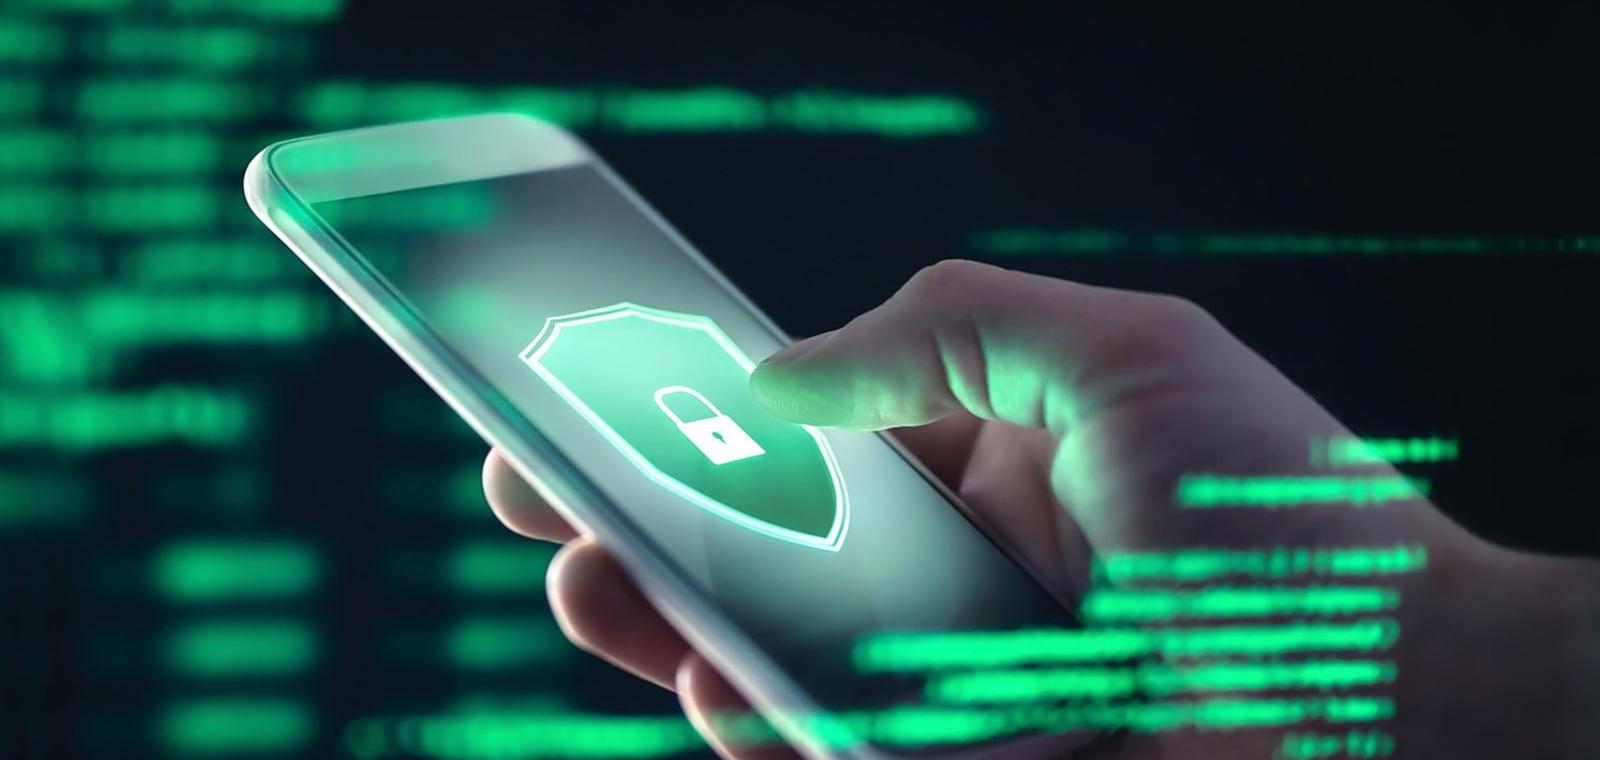 Cybermenaces, vol de données, casses : comment protéger vos équipements mobiles ?